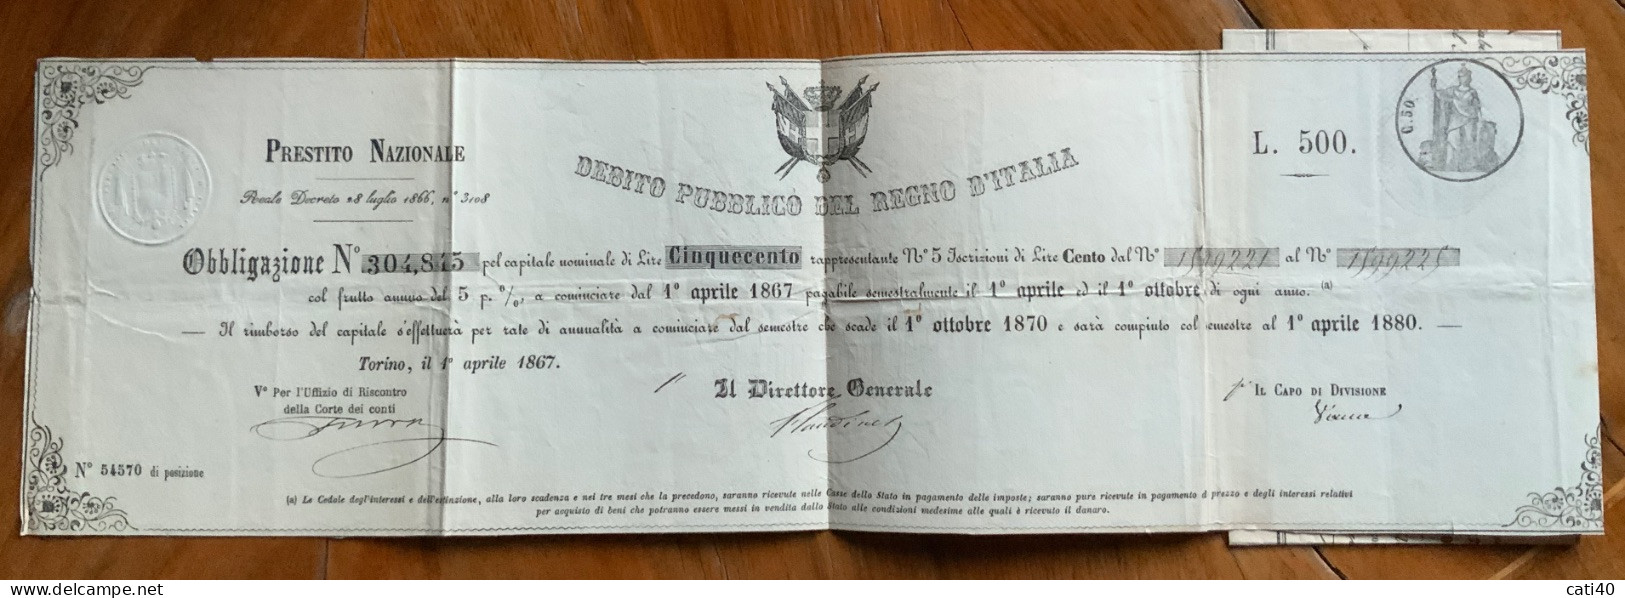 DEBITO PUBBLICO DEL REGNO D'ITALIA - PRESTITO NAZIONALE 1867  - OBBLIGAZIONE \ L. 500 - Trasporti